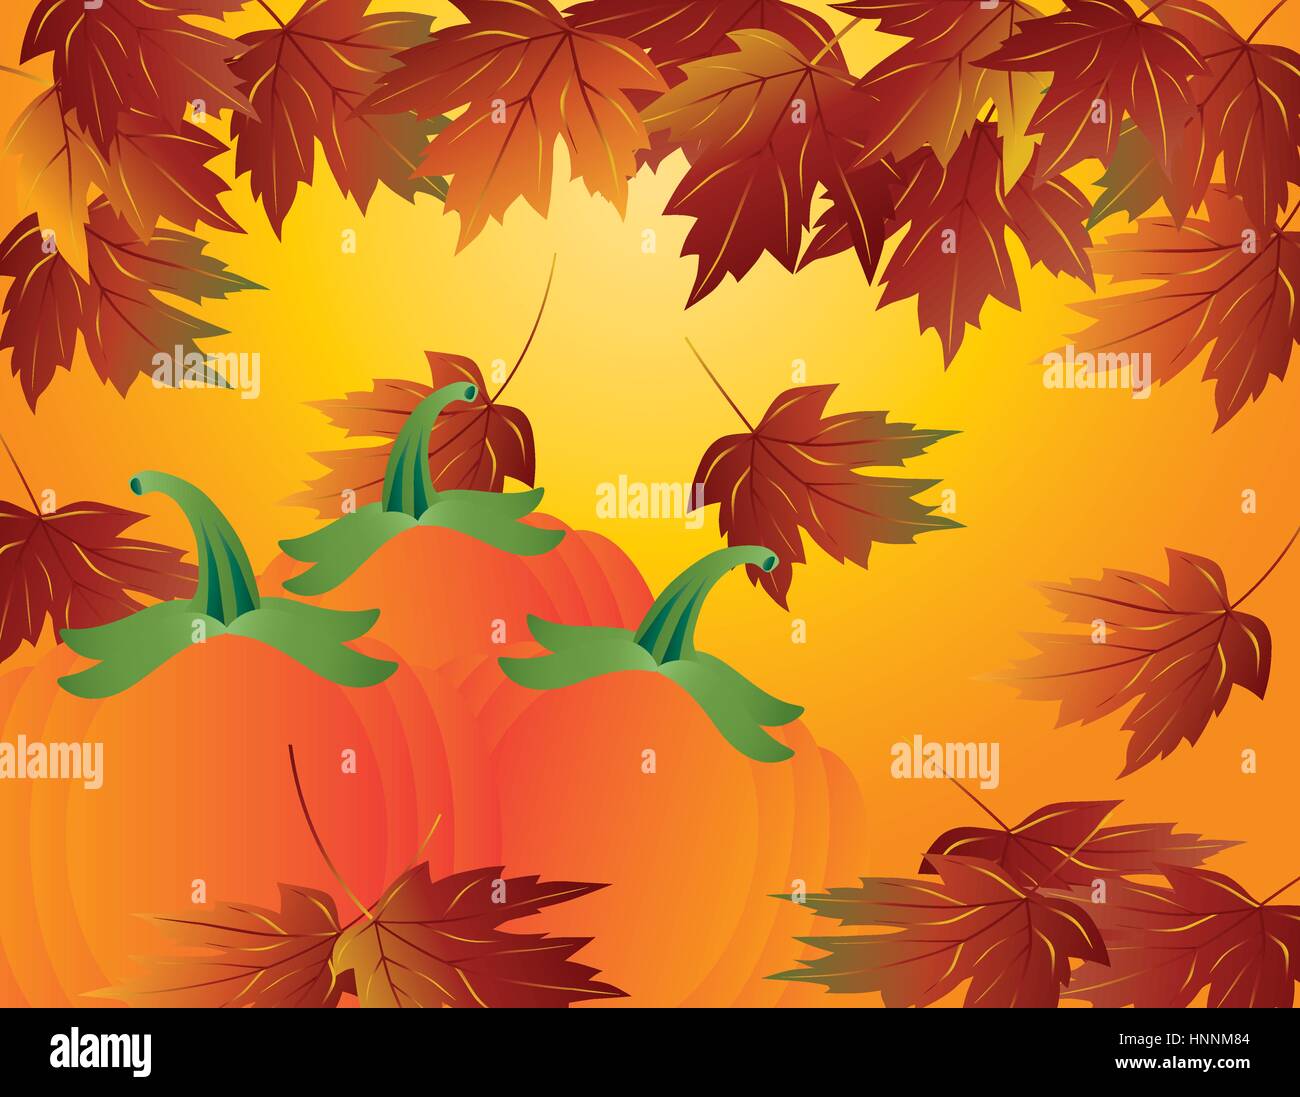 Pumpkin Patch und Ahorn Blätter fallen im Herbst Saison Abbildung Stock Vektor